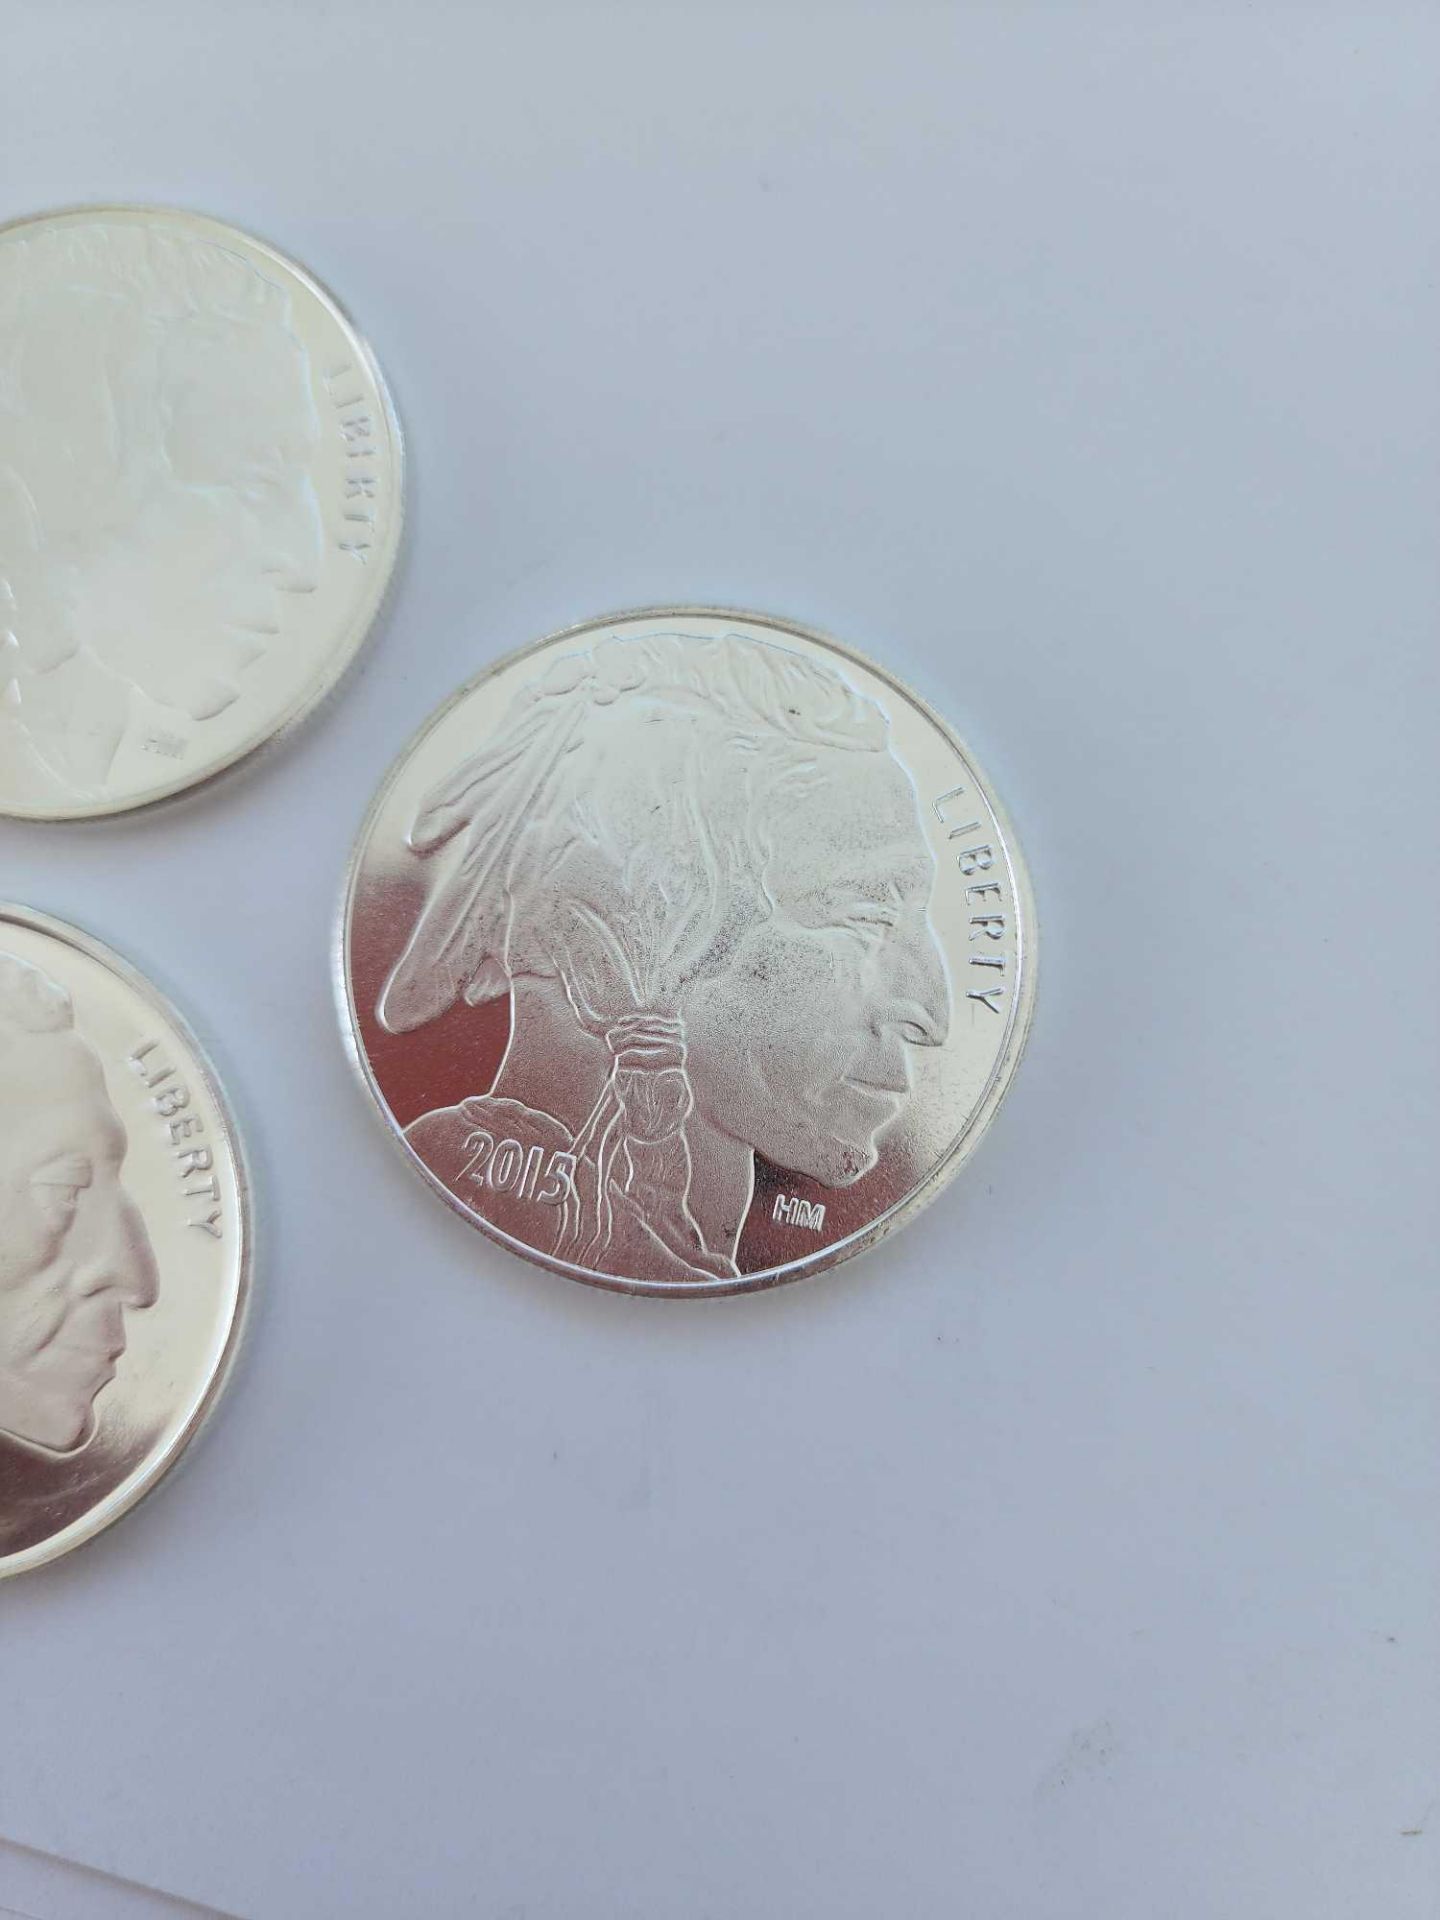 5 1 oz Buffalo Coins silver coins - Image 2 of 6